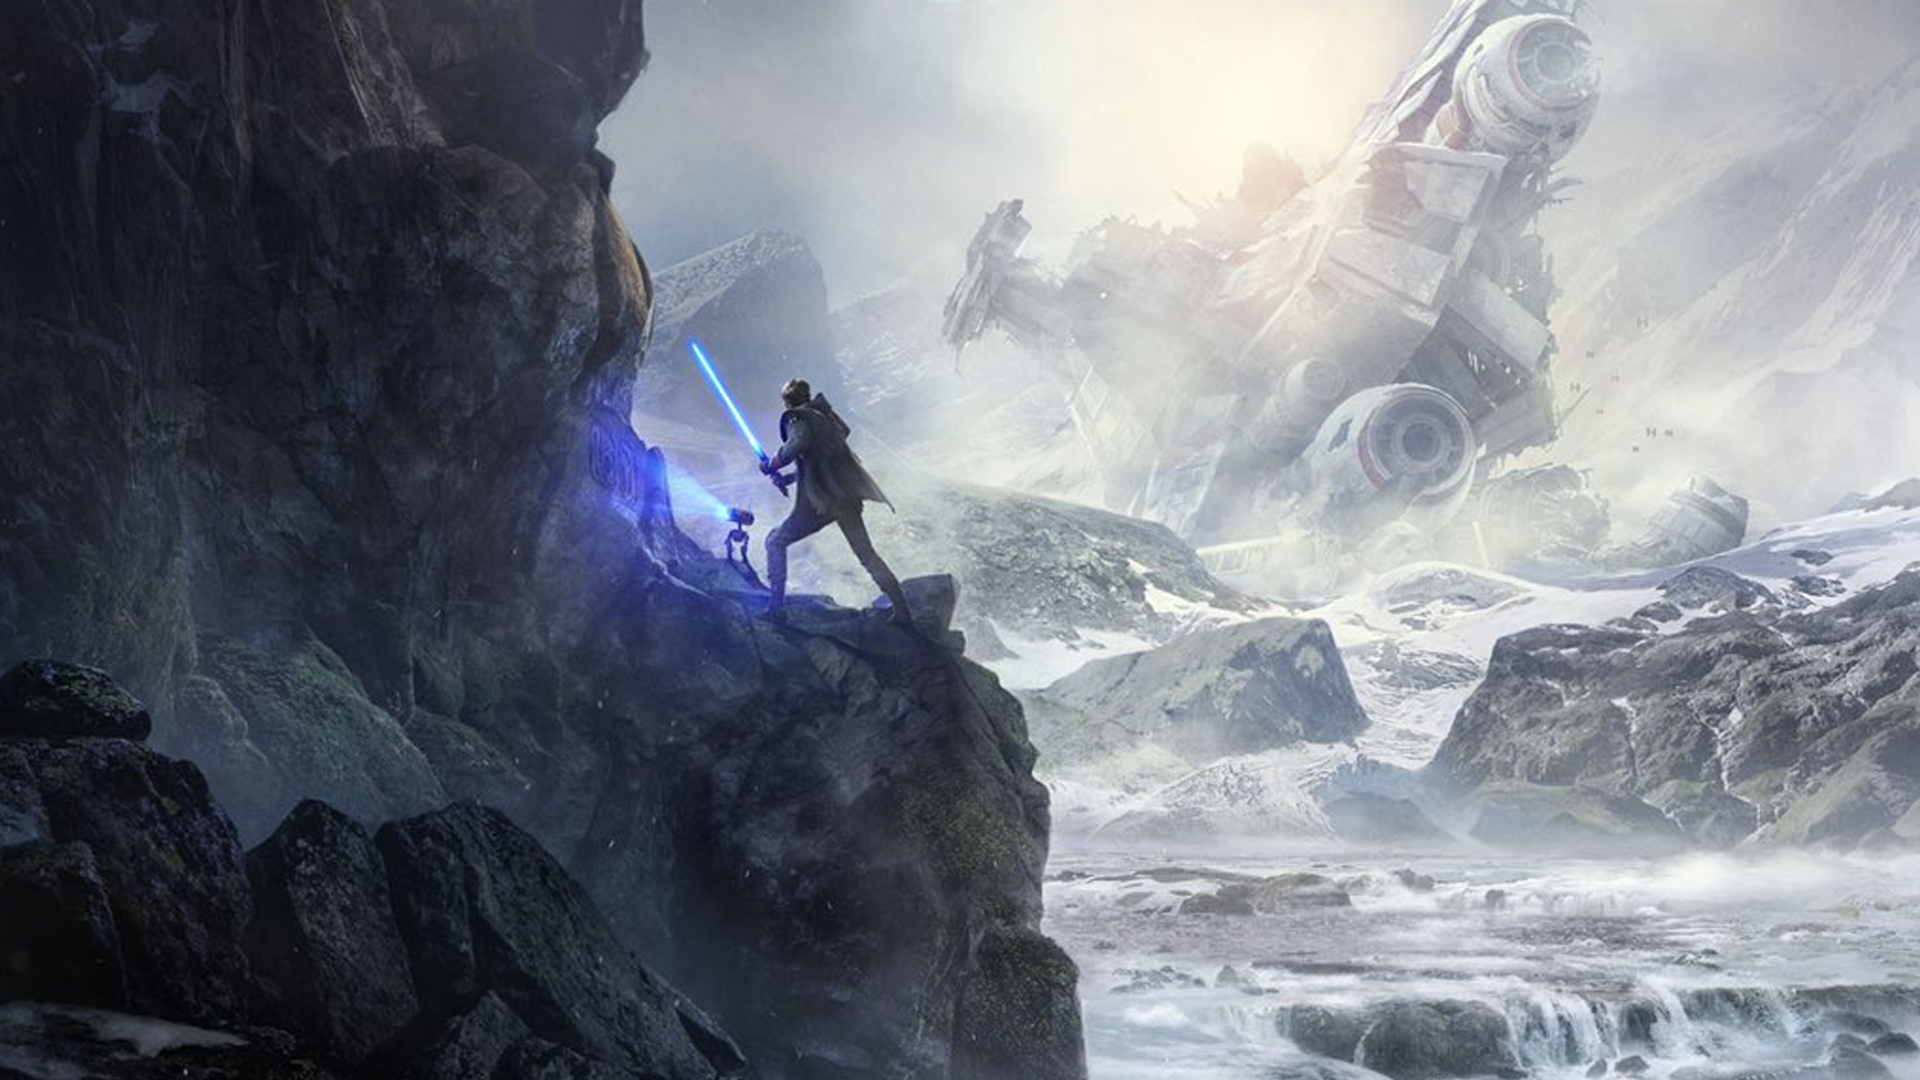 Star Wars Jedi: Fallen Order' Unveil Set for April Star Wars Celebration